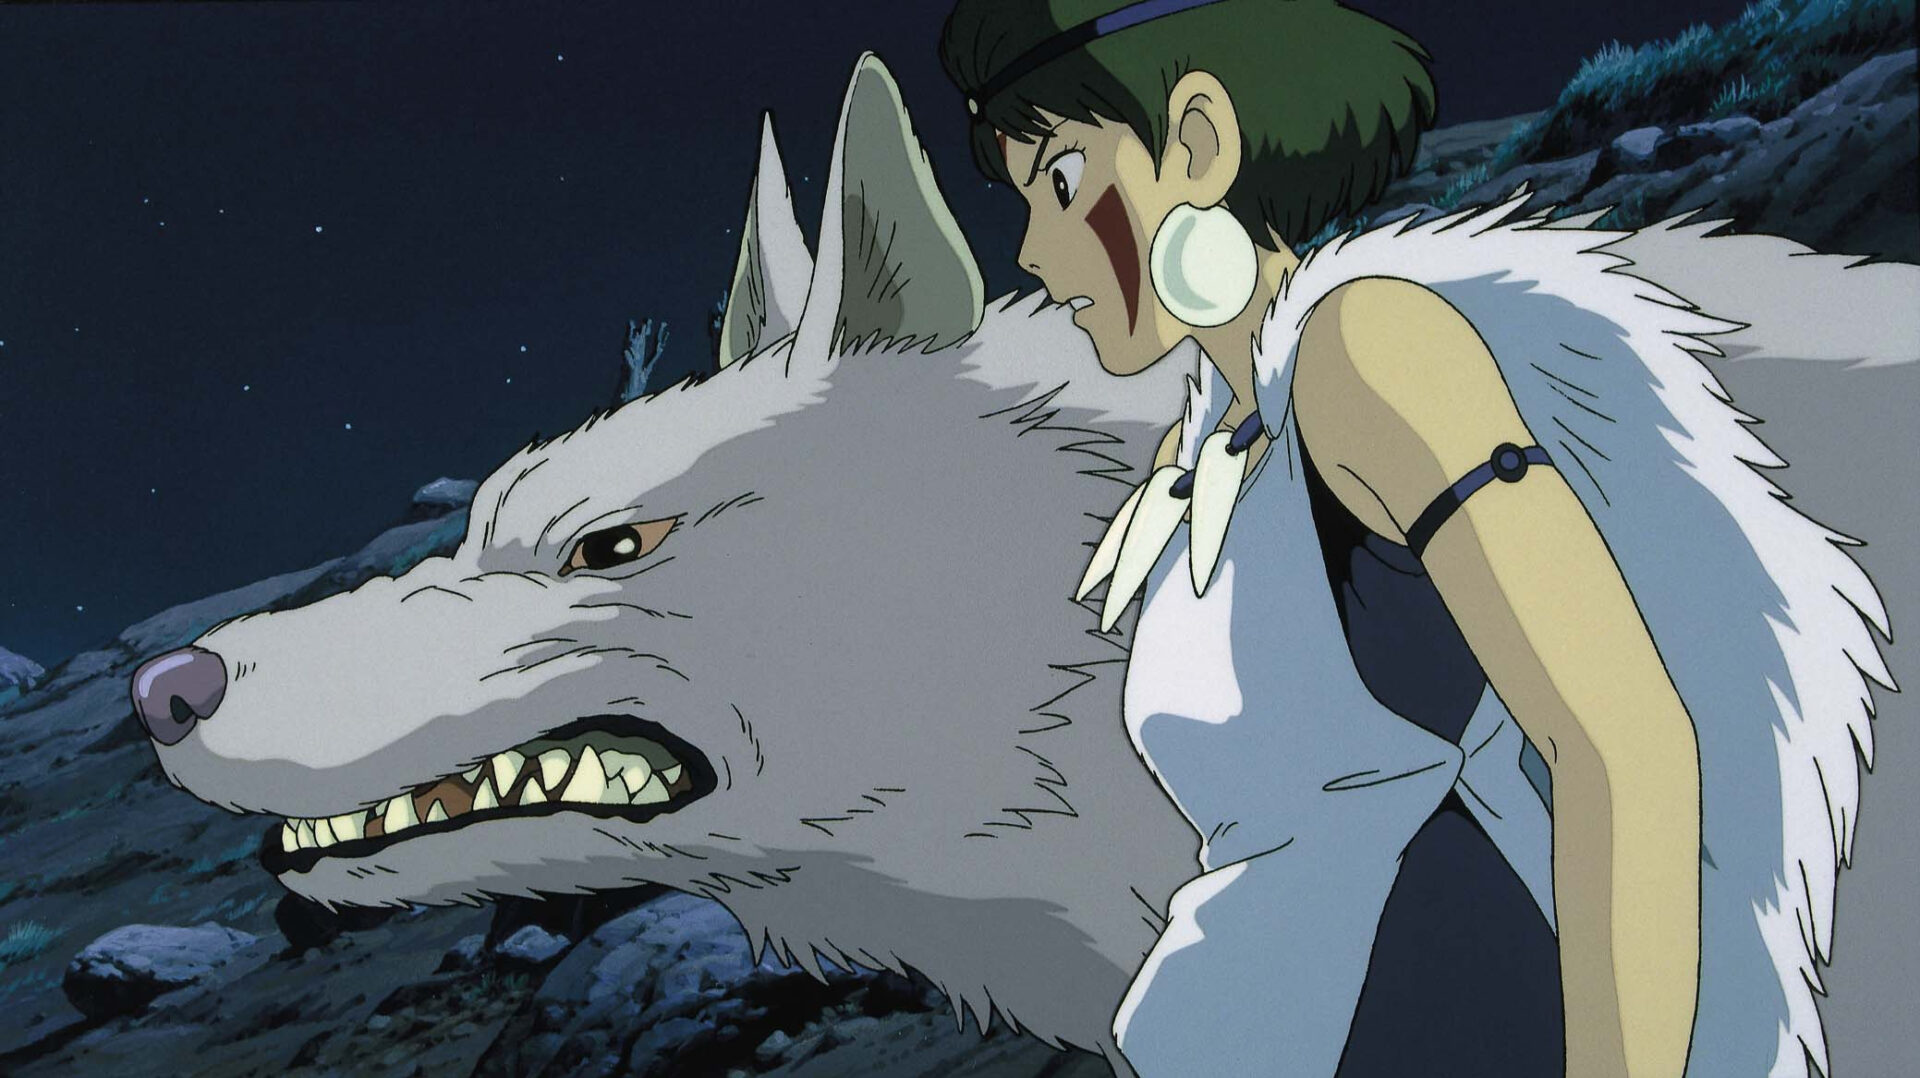 Prinzessin Mononoke: Das Bild zeigt eine junge Frau, die neben einem knurrenden, weißen Wolf steht